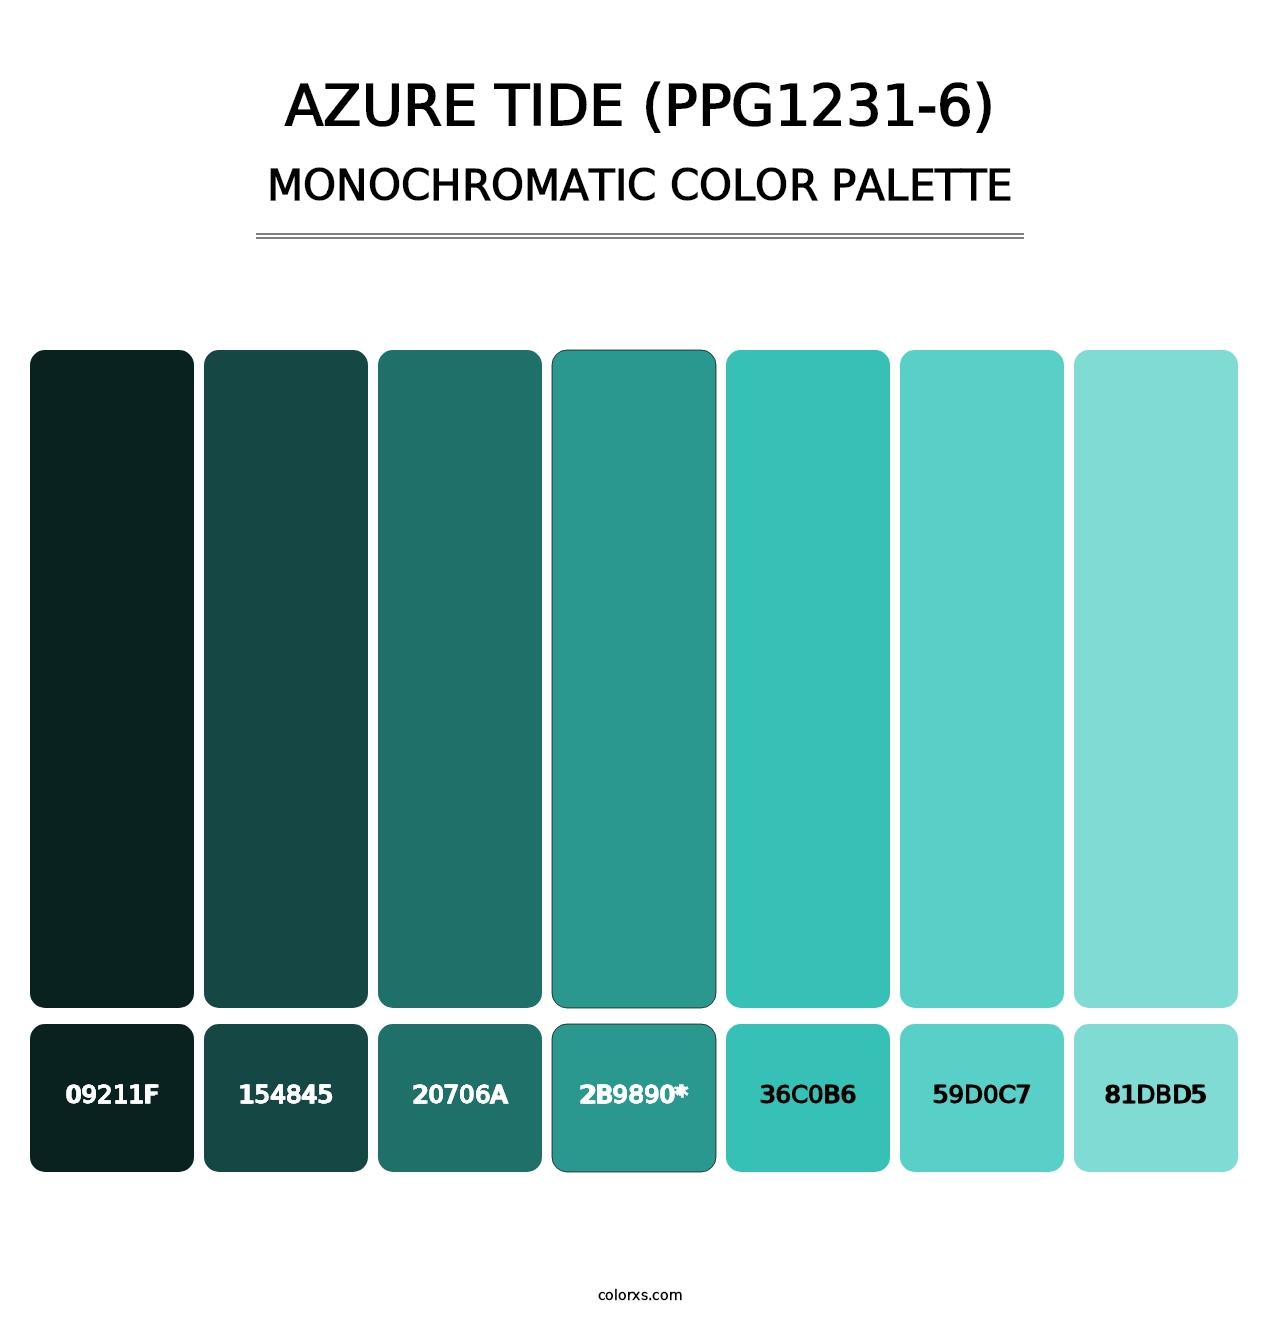 Azure Tide (PPG1231-6) - Monochromatic Color Palette